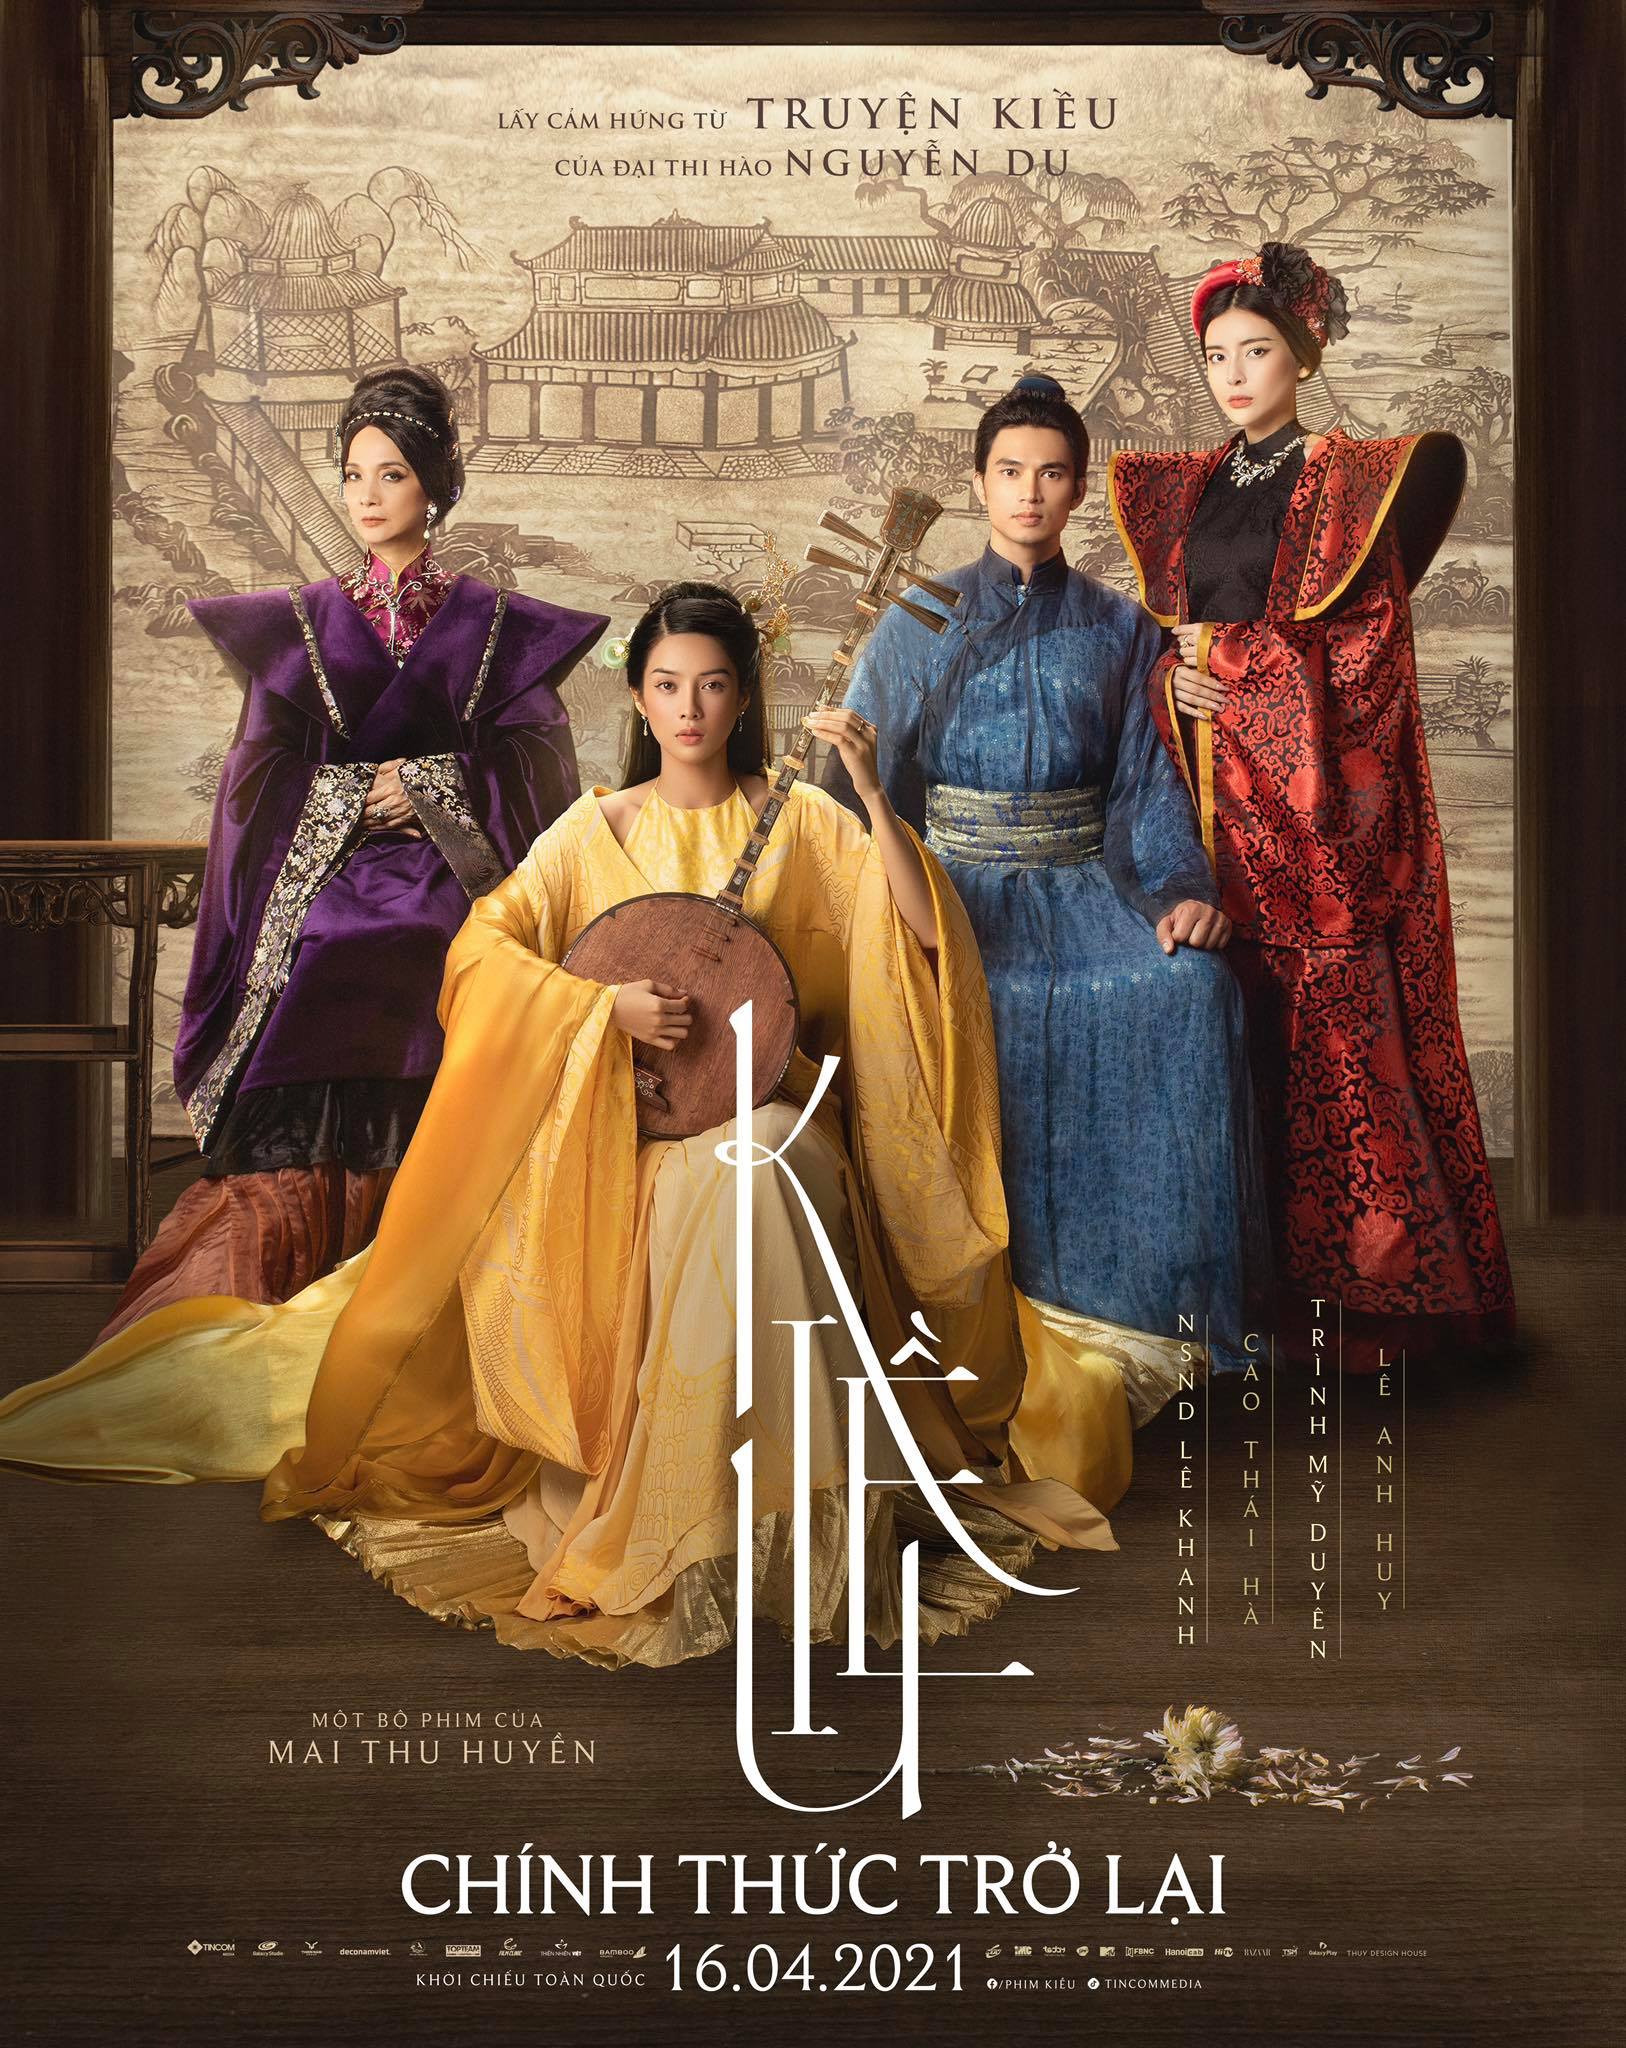 Poster phim điện ảnh “Kiều” đã đổi ngày khởi chiếu 16.4.2021.